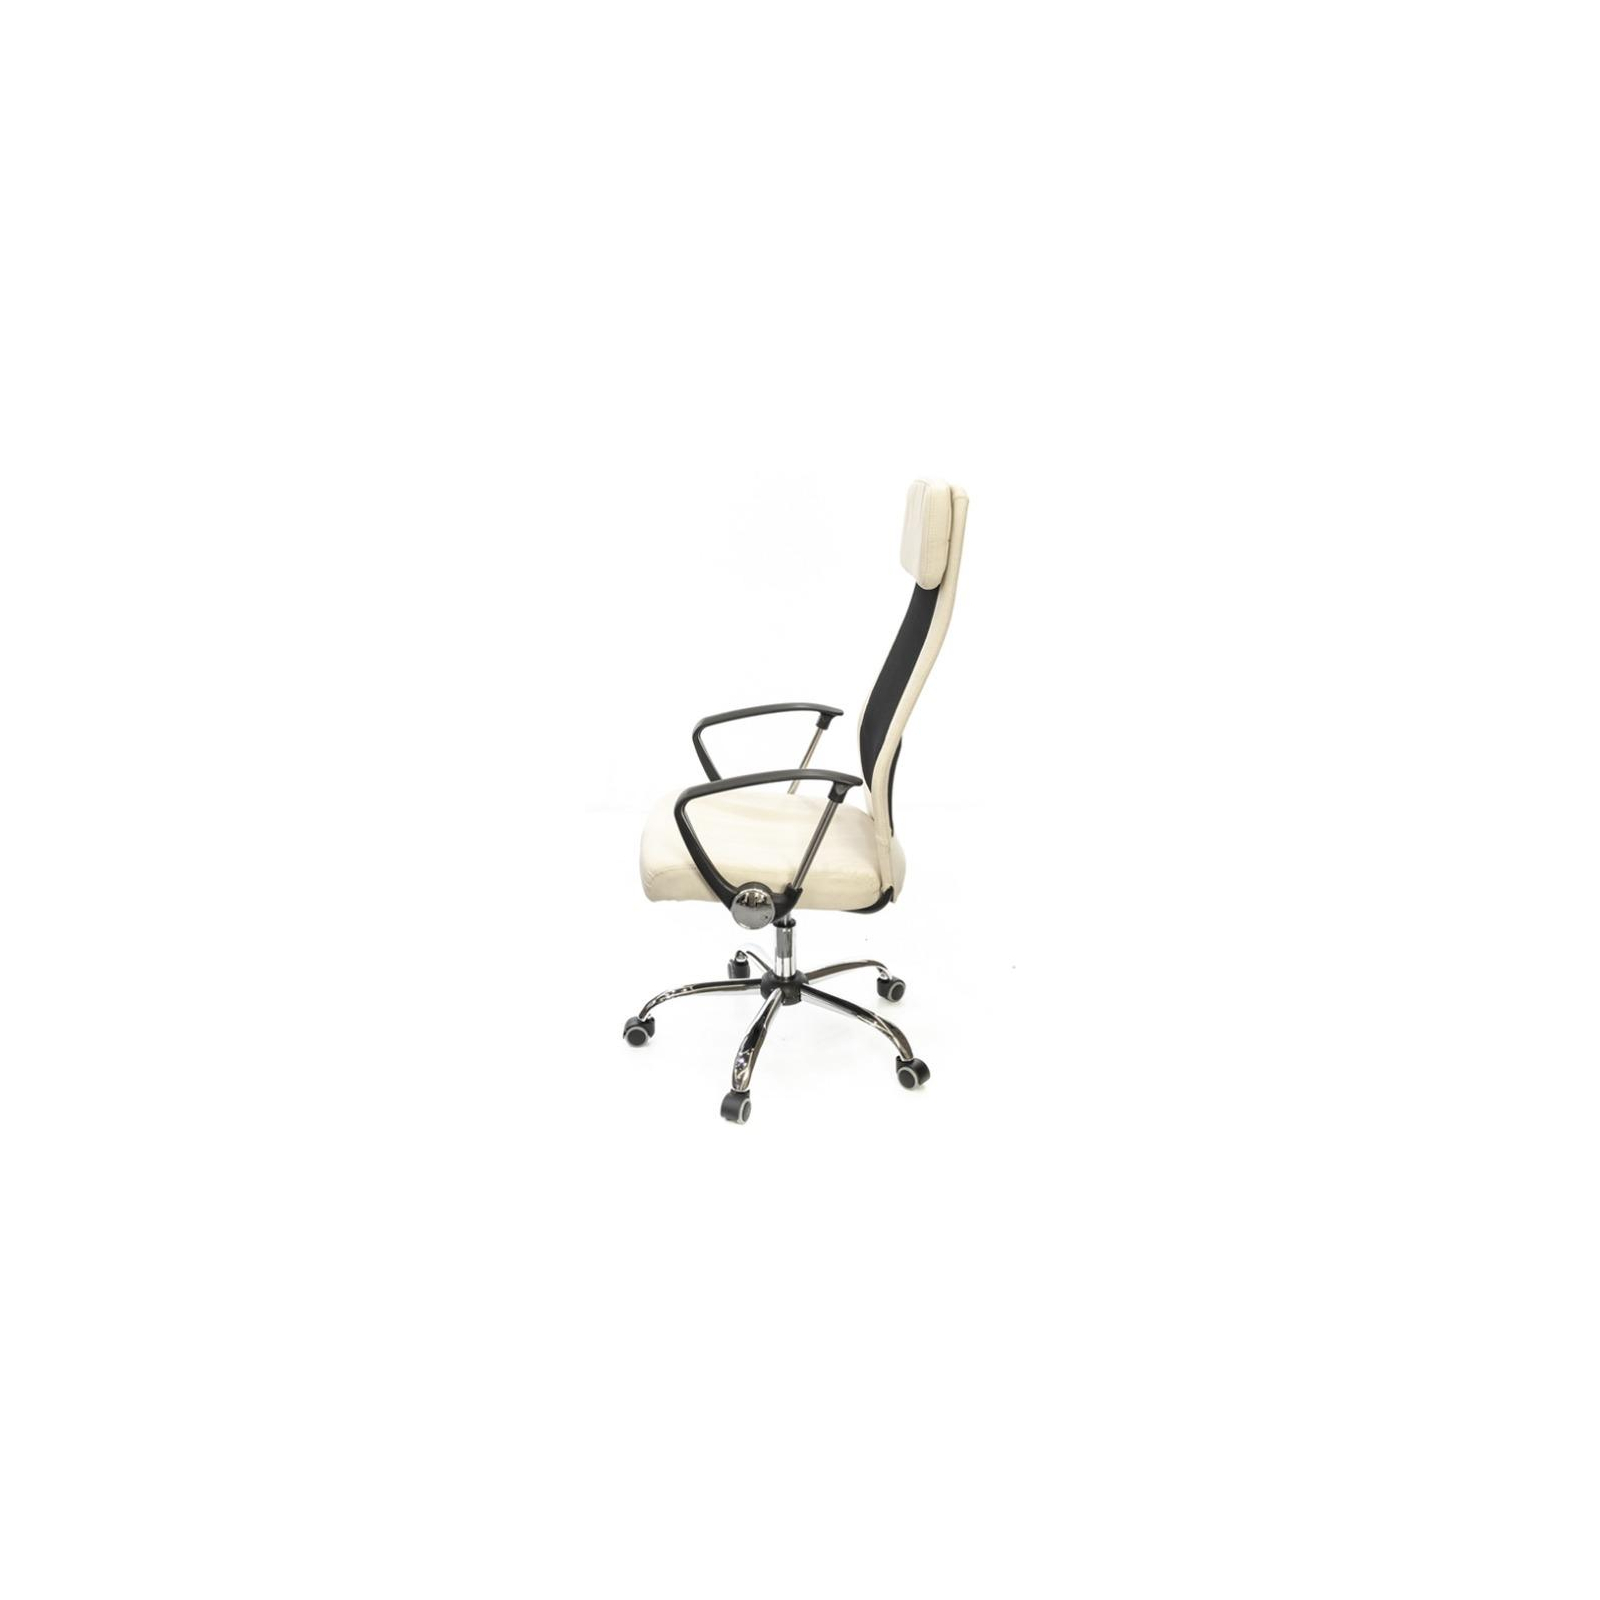 Офисное кресло Аклас Гилмор FX CH TILT Оранжевое (11032) изображение 3